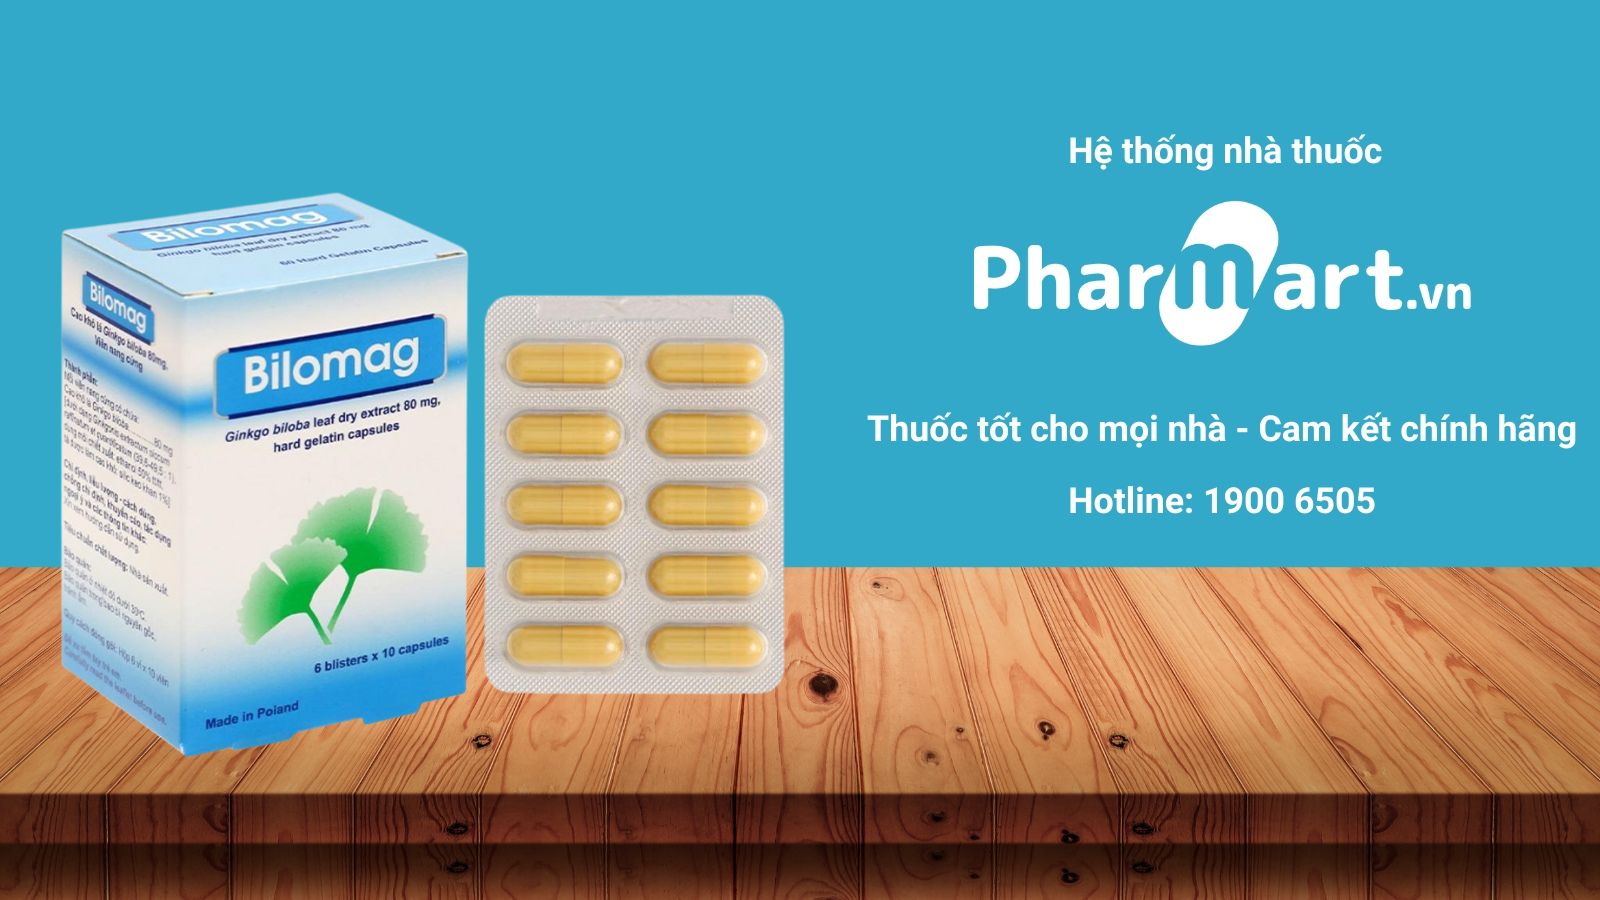 Mua sản phẩm chính hãng tại Nhà thuốc Pharmart.vn